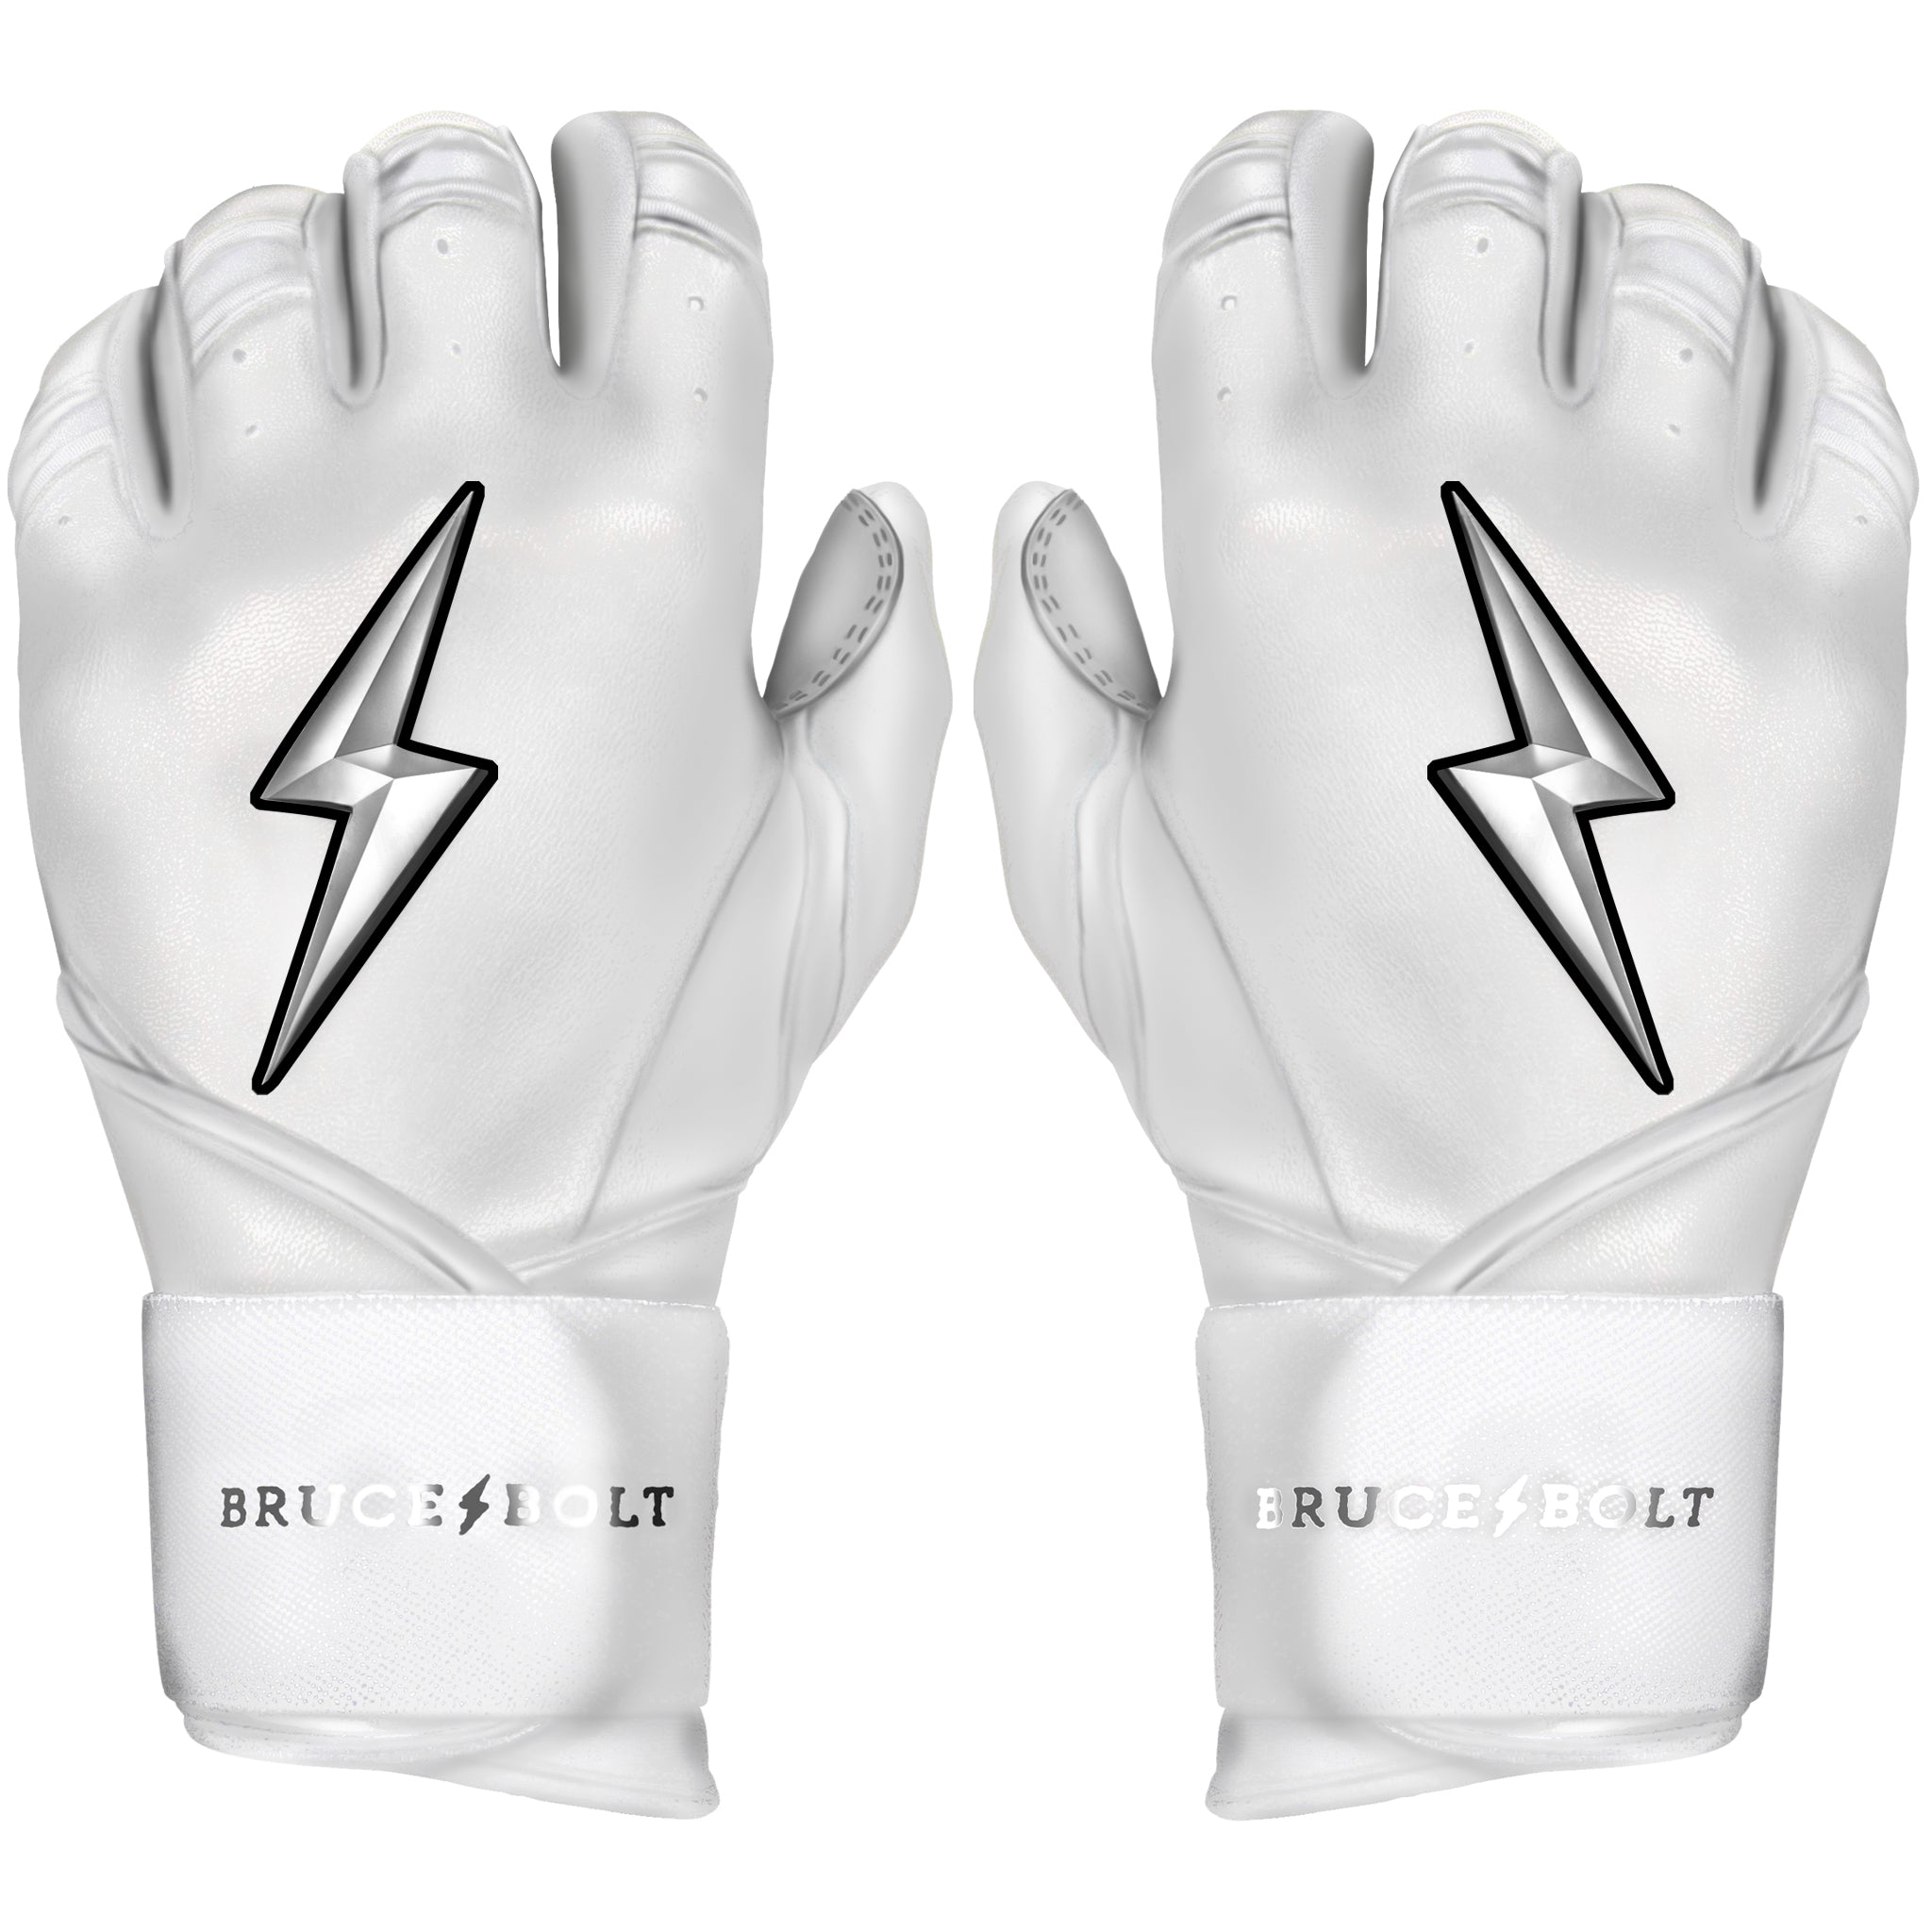 All White Full Wrap Batting Gloves | CHROME Series – BRUCE BOLT